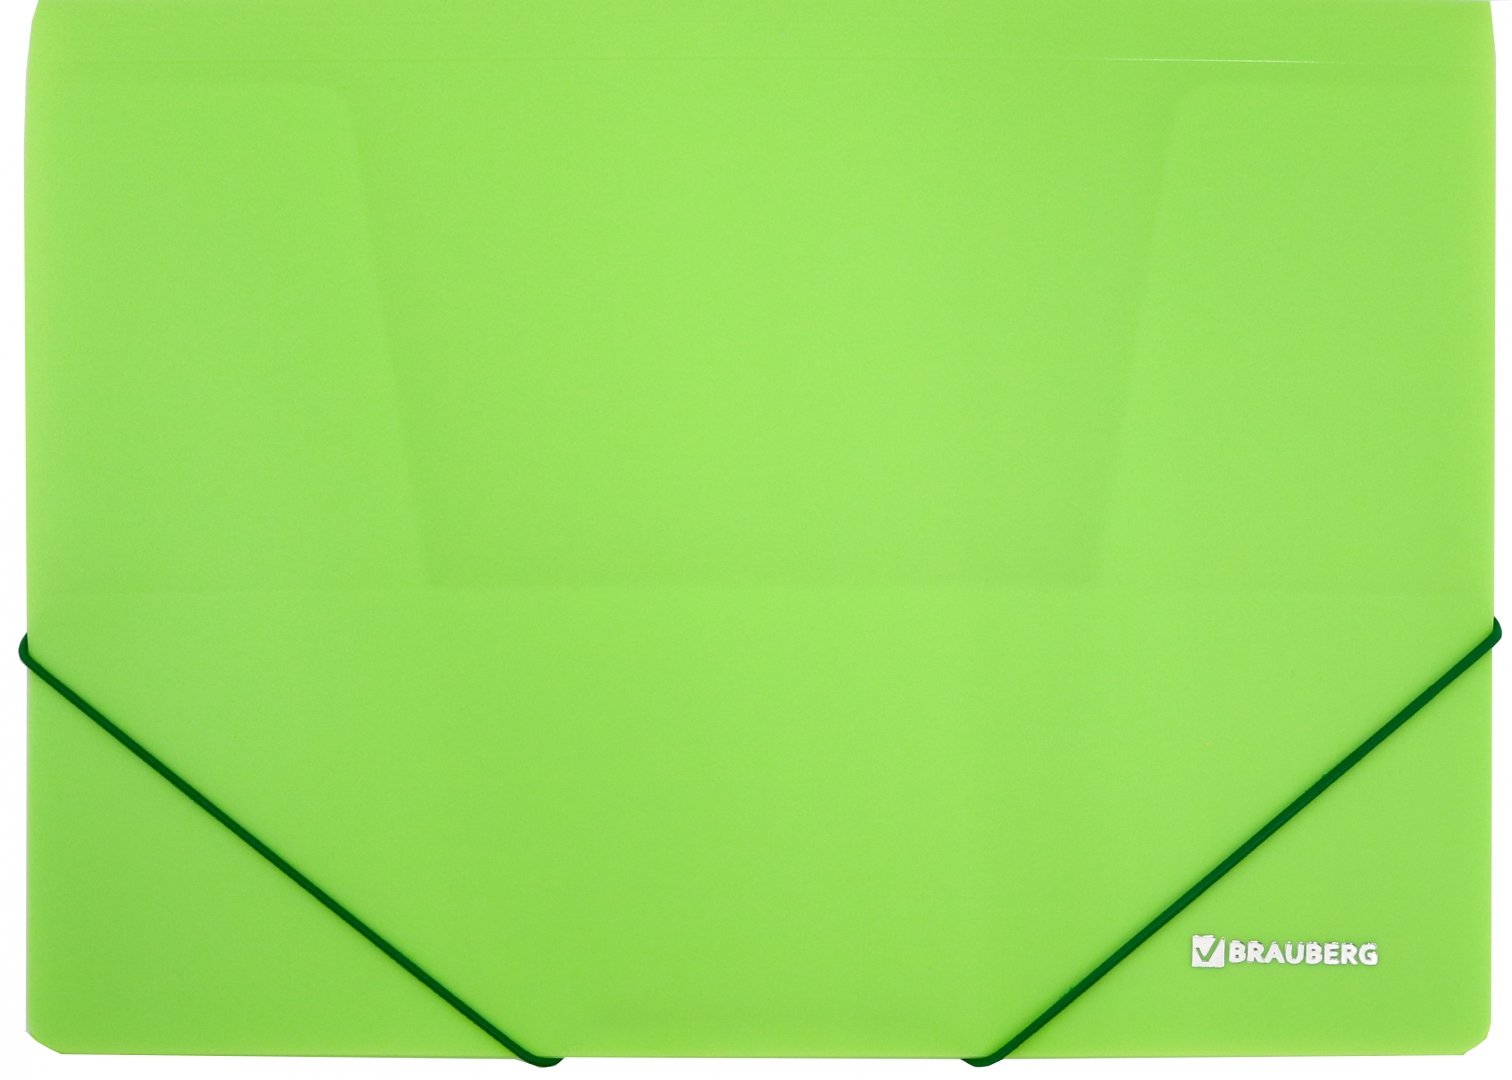 Иллюстрация 1 из 9 для Папка на резинках Neon, зеленая (227460) | Лабиринт - канцтовы. Источник: Лабиринт